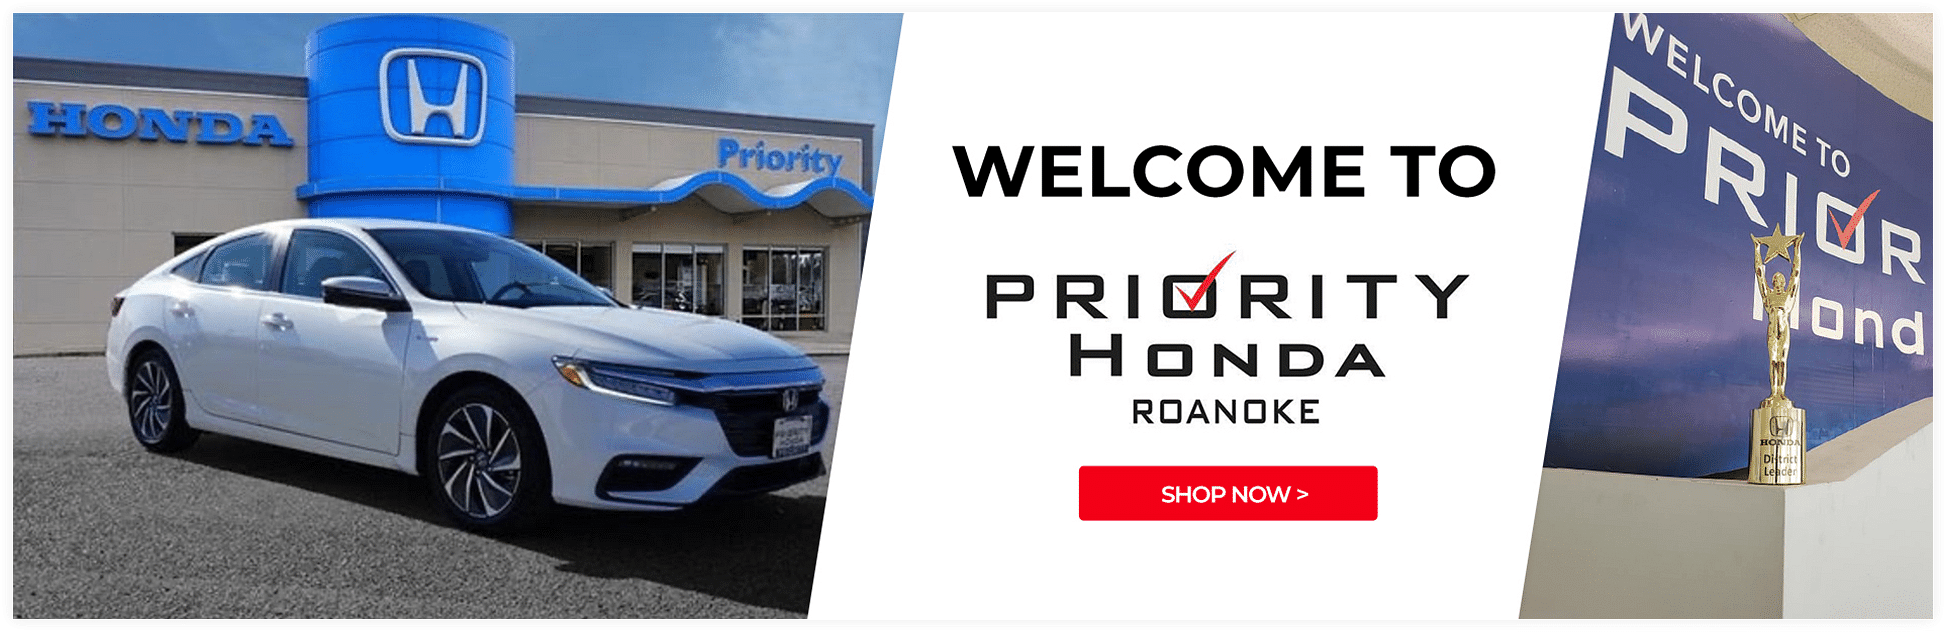 Honda Priority in Roanoke